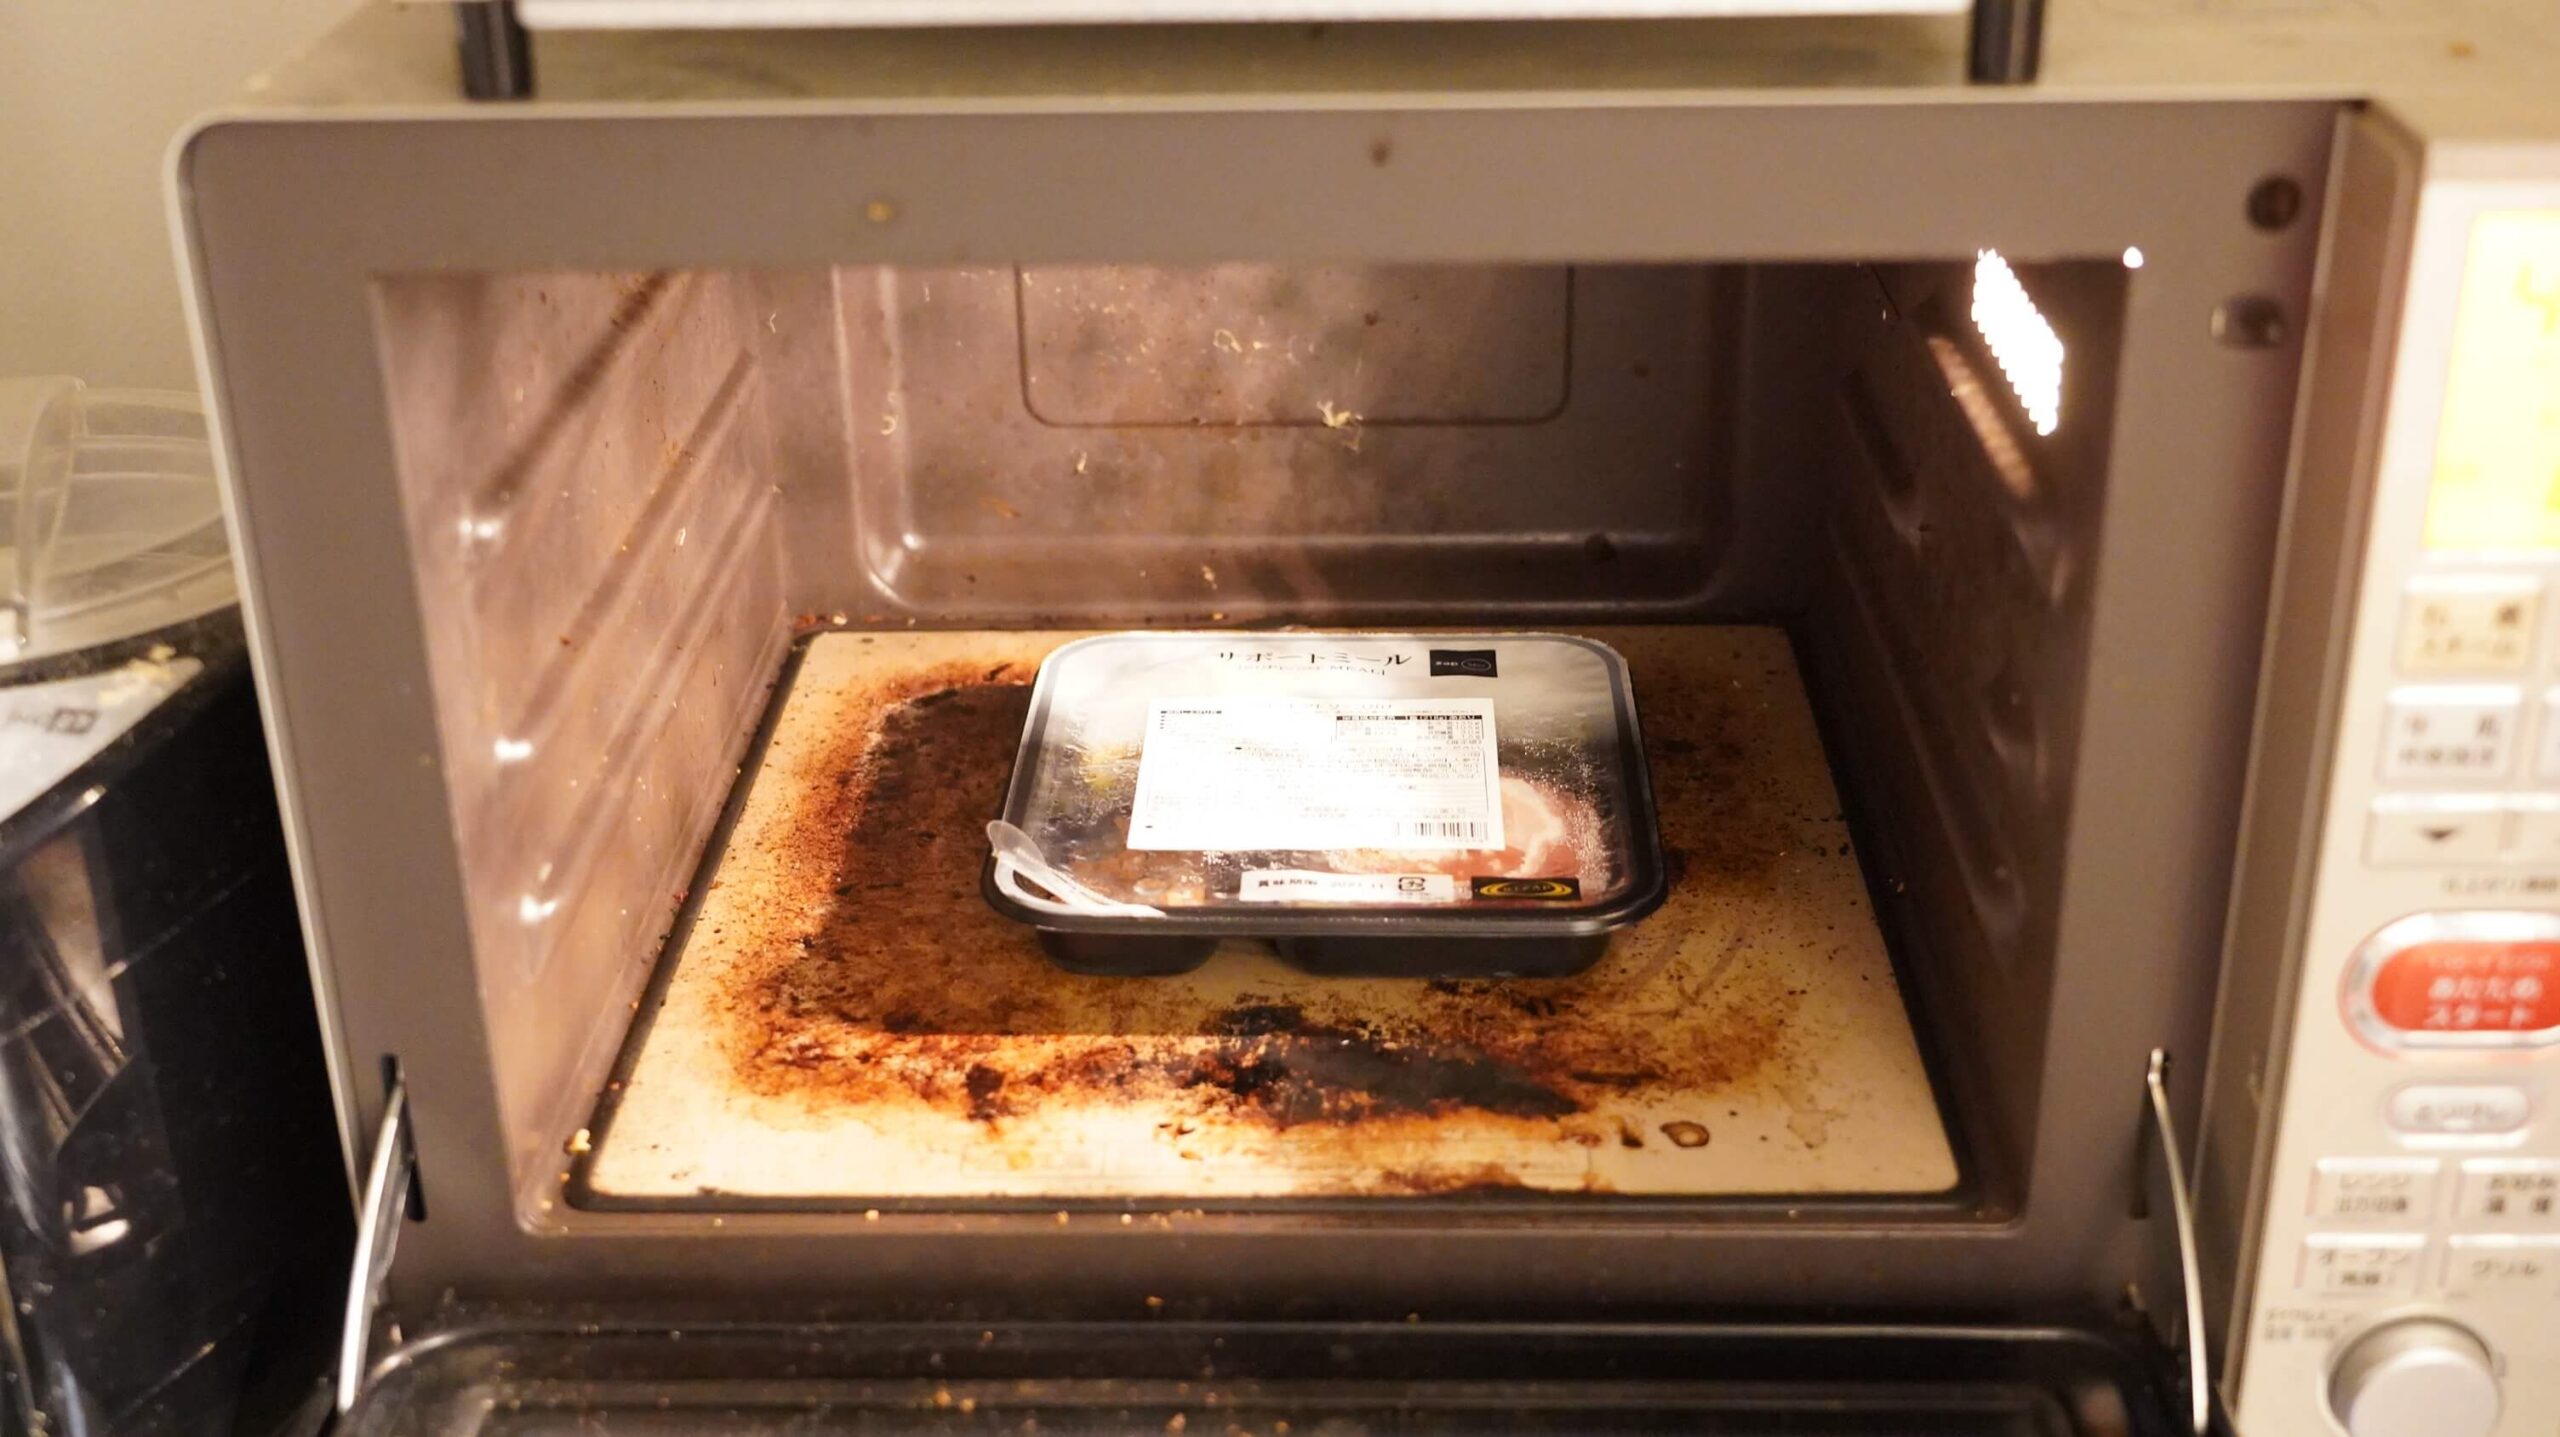 ライザップのサポートミール「さばのトマトソースがけ」を電子レンジで加熱している写真